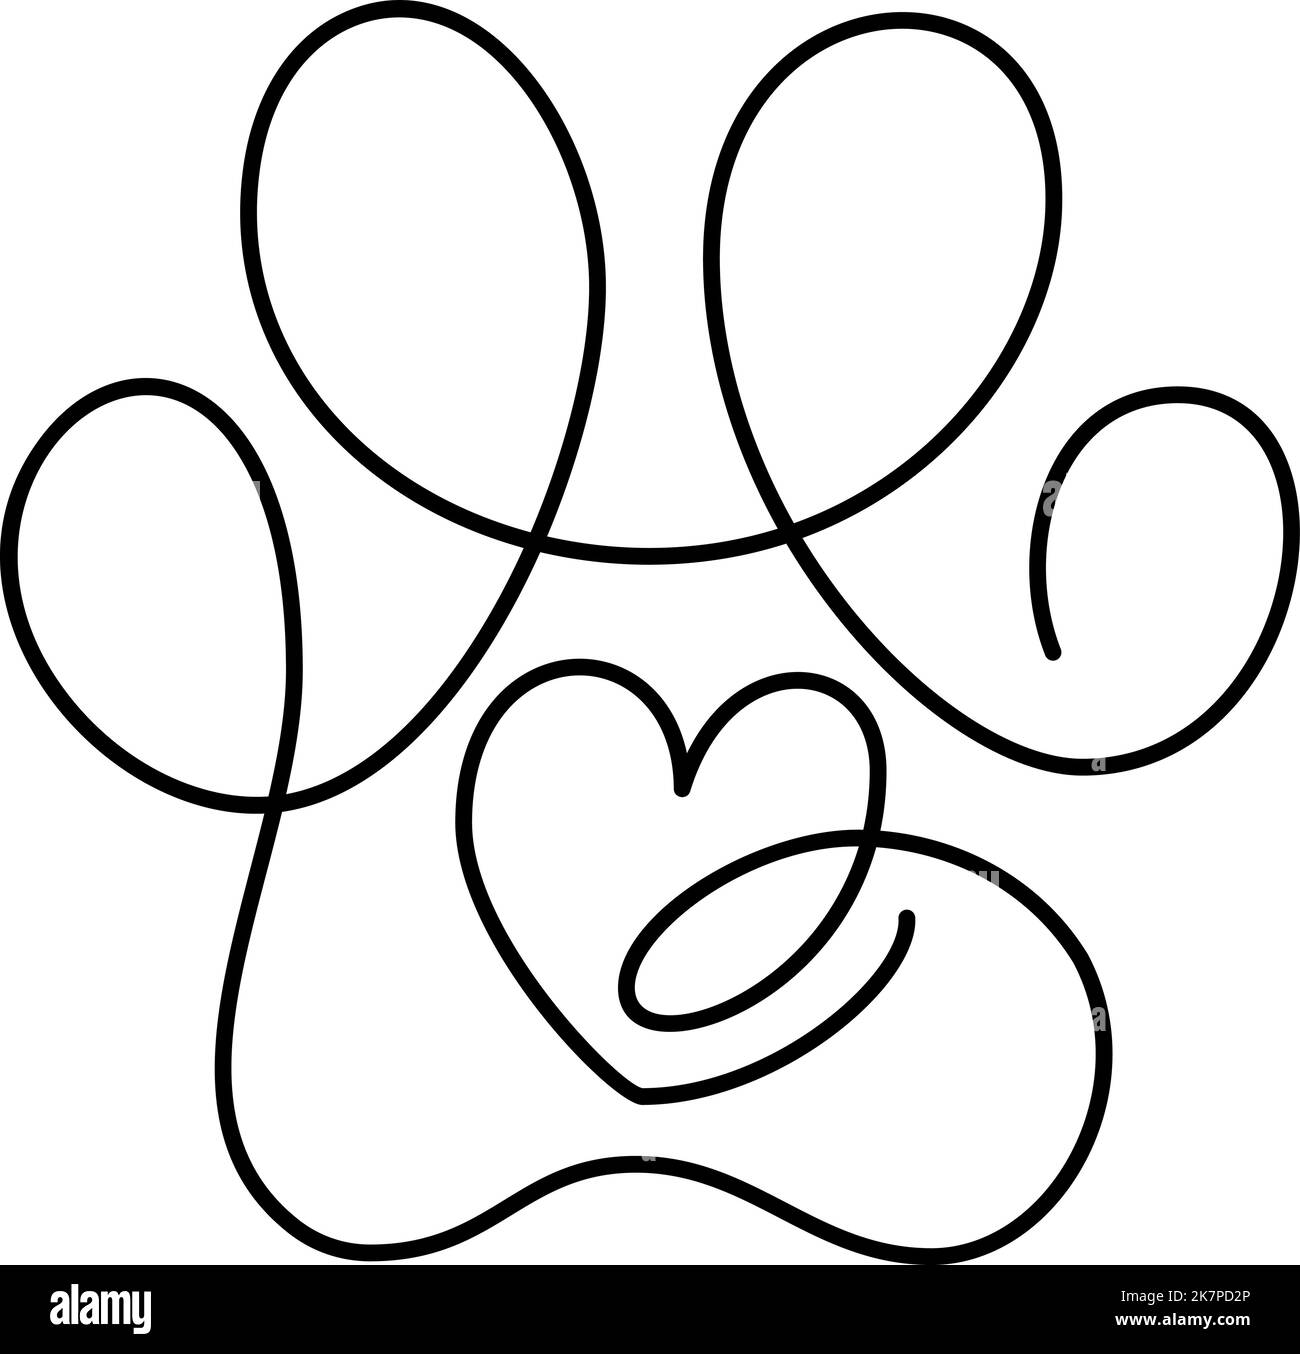 Herz mit Katze oder Hundepfote in kontinuierlicher Einzelzeilenzeichnung. Minimale Strichkunst Tier-Foorprint im Herzen. PET Love-Konzept Stock Vektor